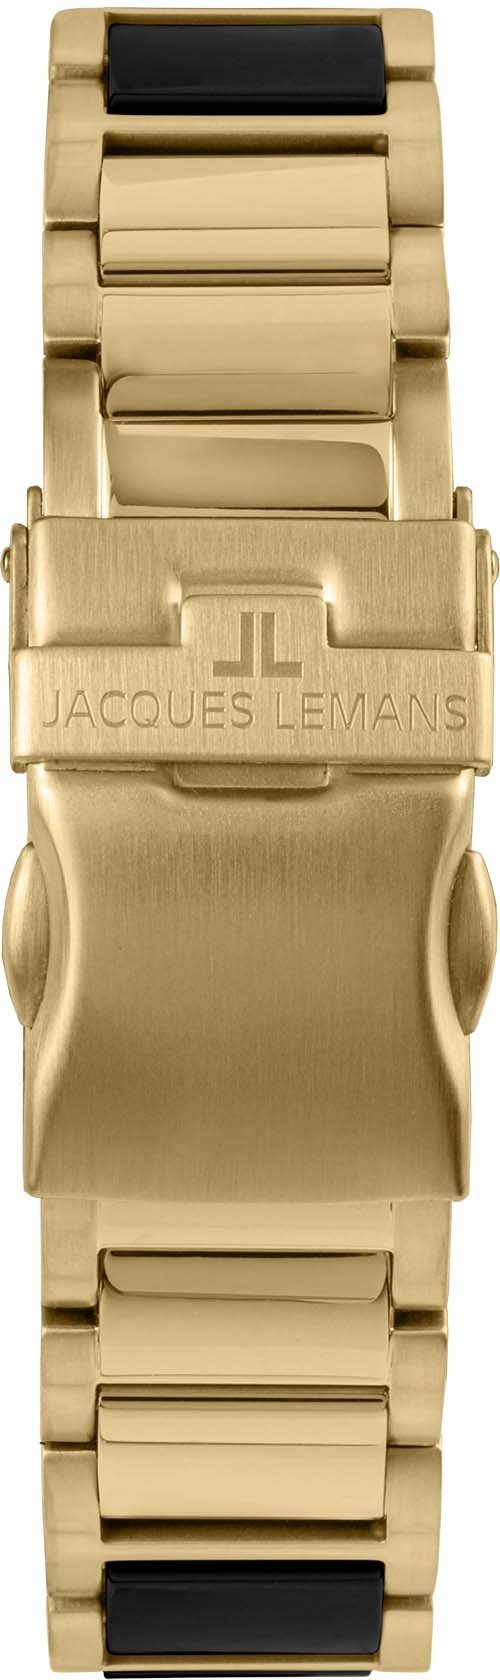 42-10G Jacques Lemans Liverpool, Keramikuhr